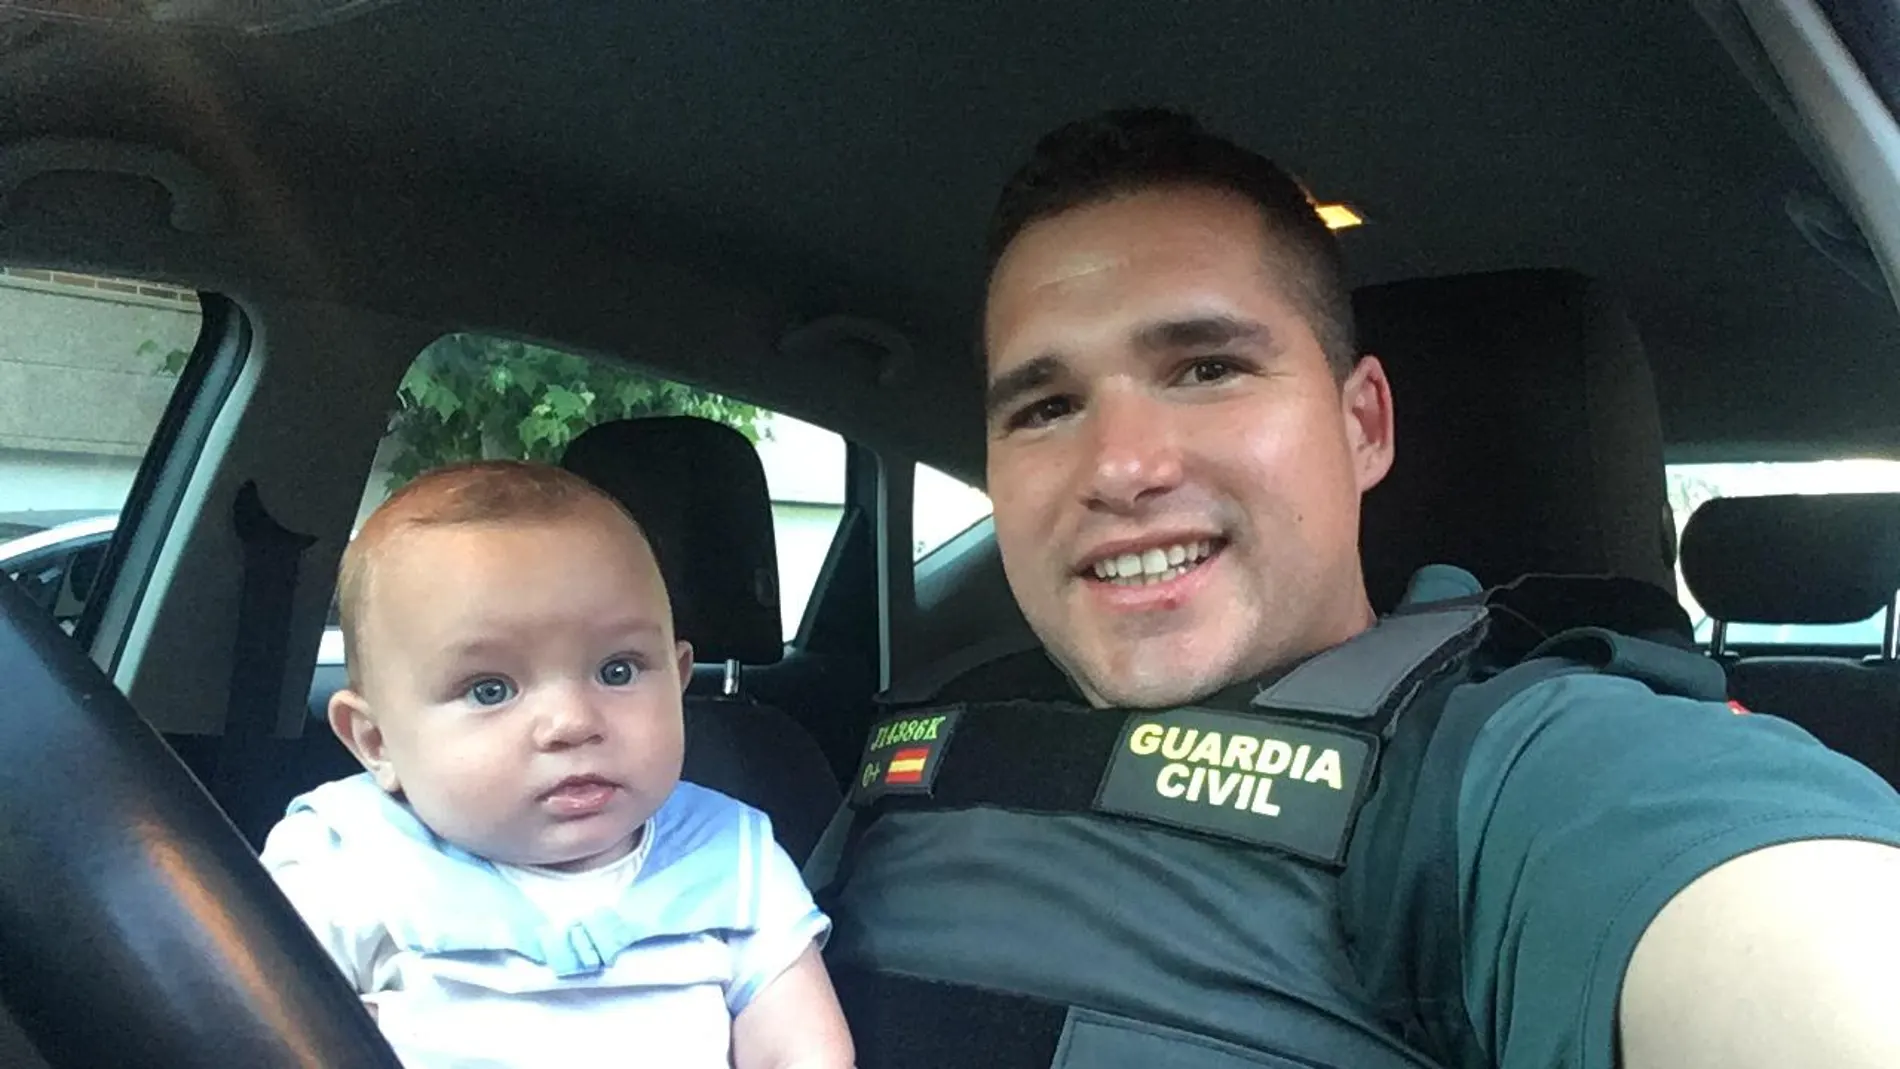 El guardia civil junto al bebé al que salvó